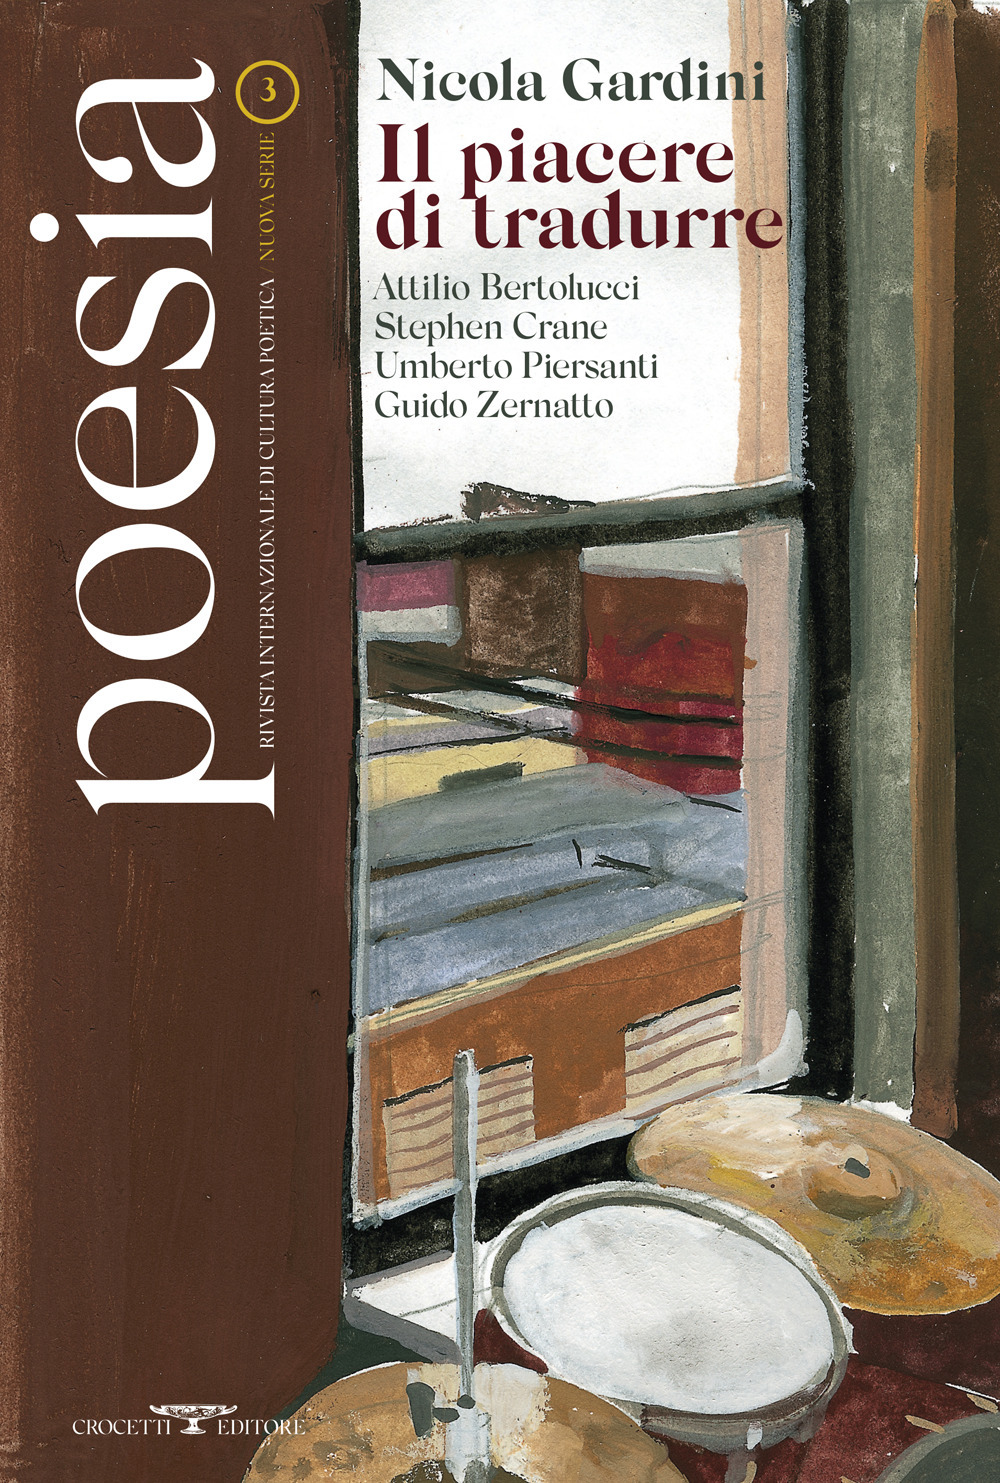 Poesia. Rivista internazionale di cultura poetica. Nuova serie. Vol. 3: Nicola Gardini. Il piacere di tradurre